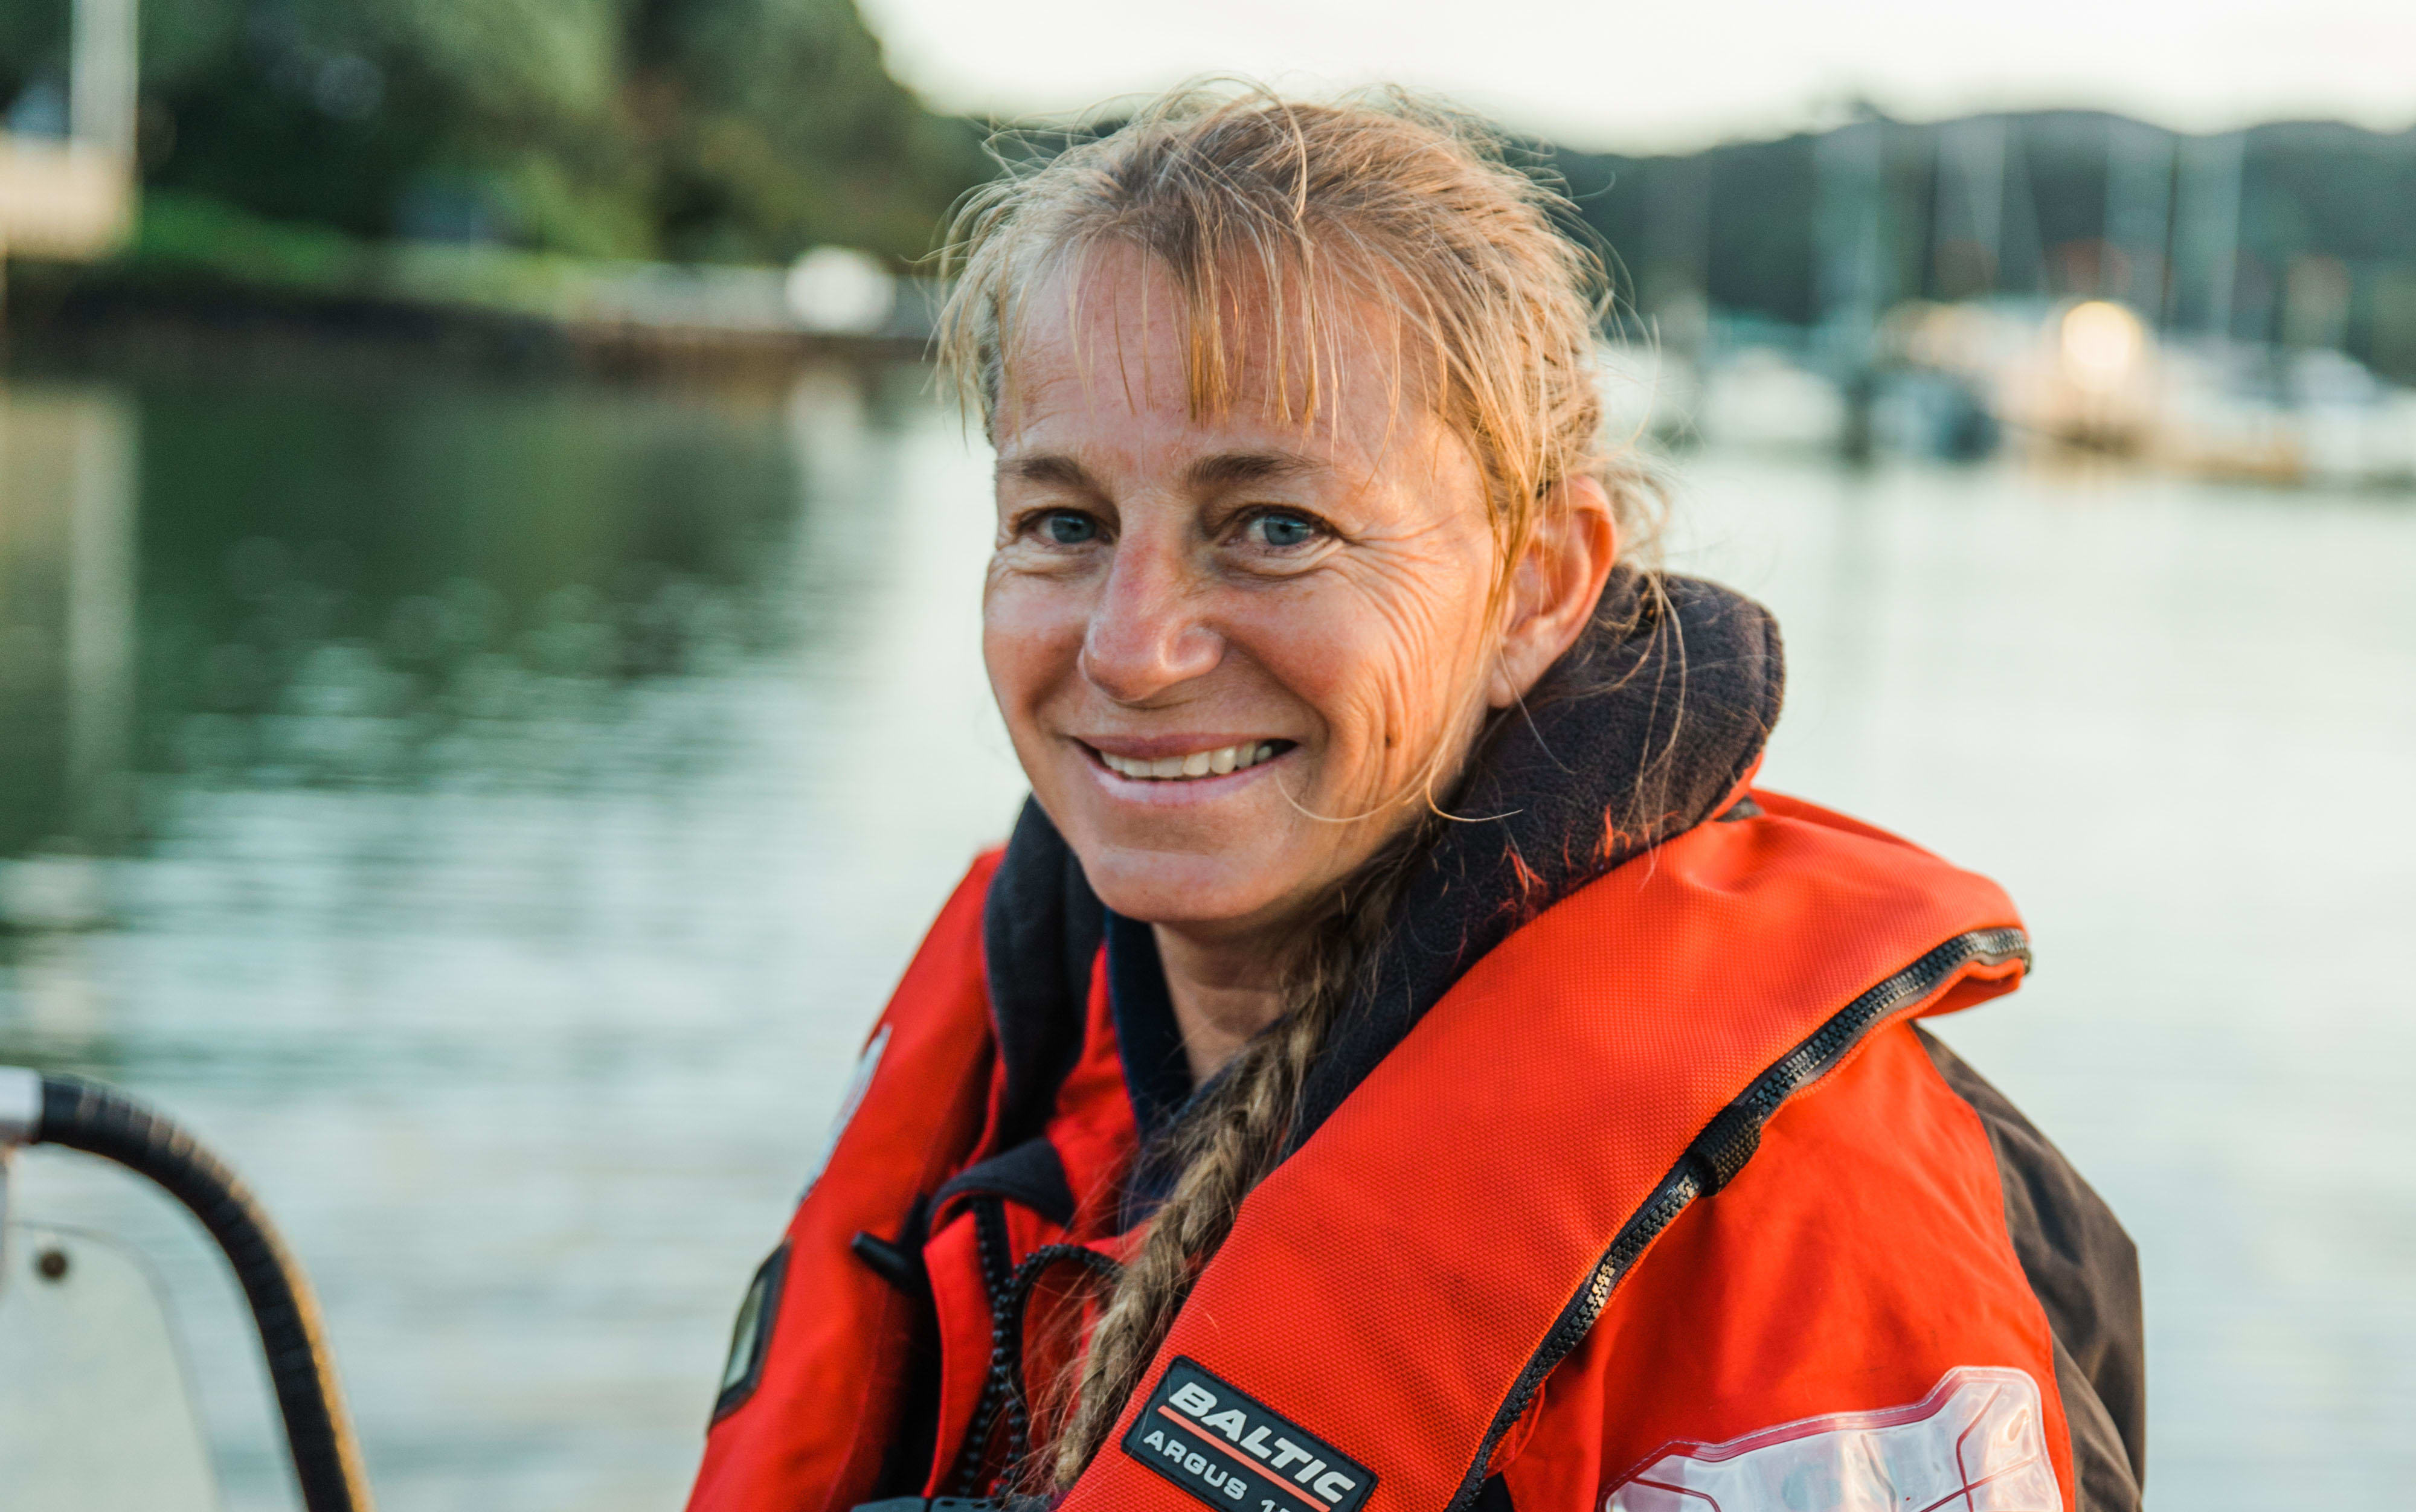 Dr Ingrid Visser aboard her boat in Mill Bay, Mangonui Harbour, Northland